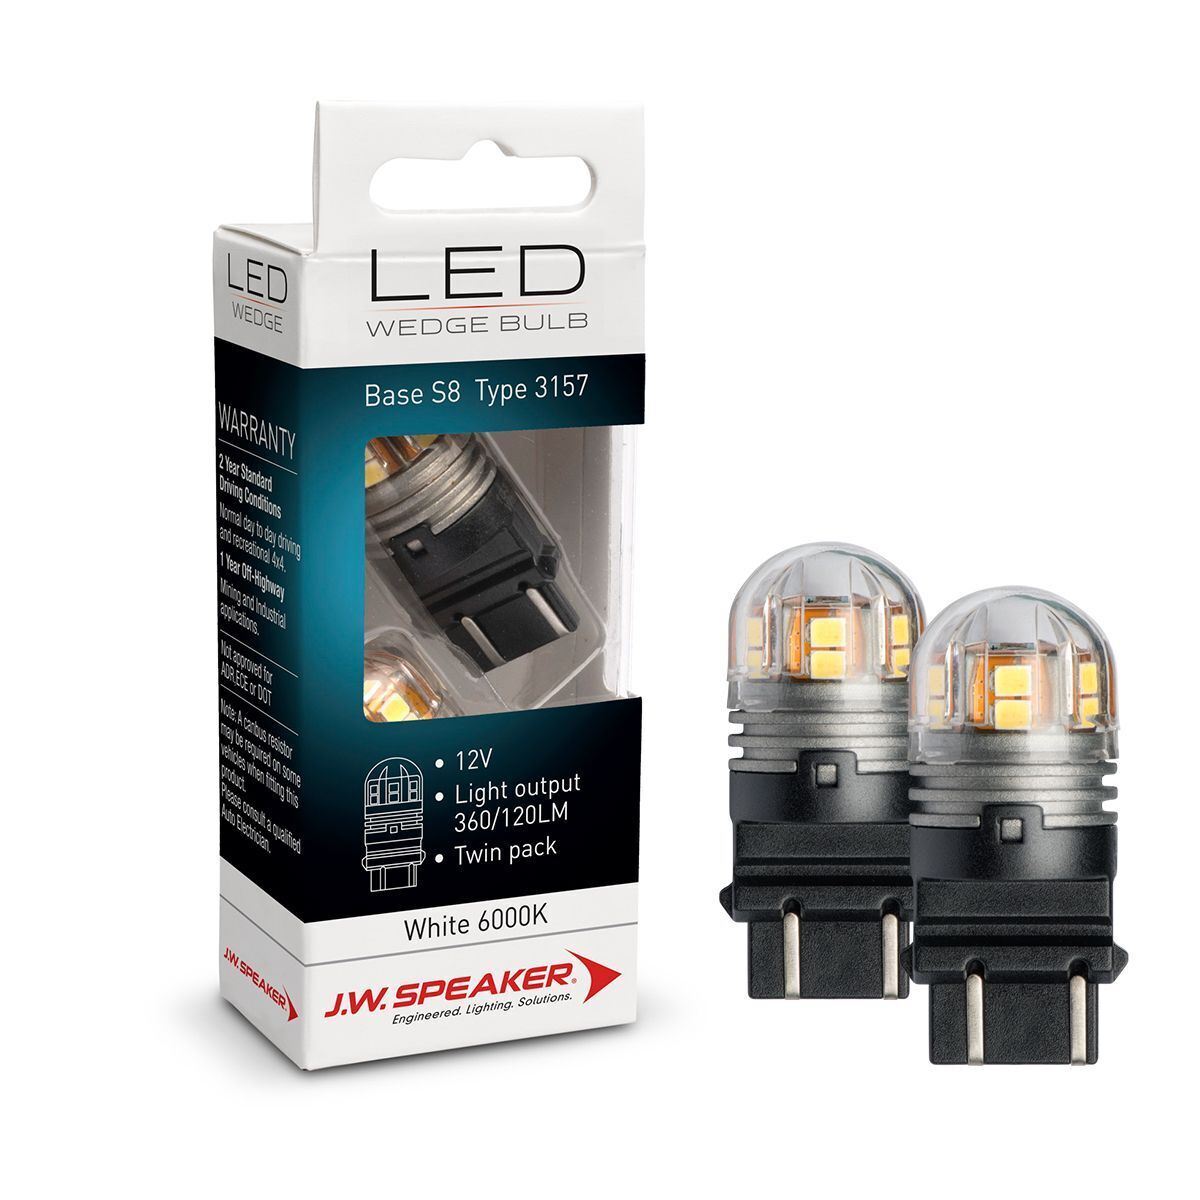 H3 CAN Bus LED Daytime Running Light Bulb - 220 Lumens